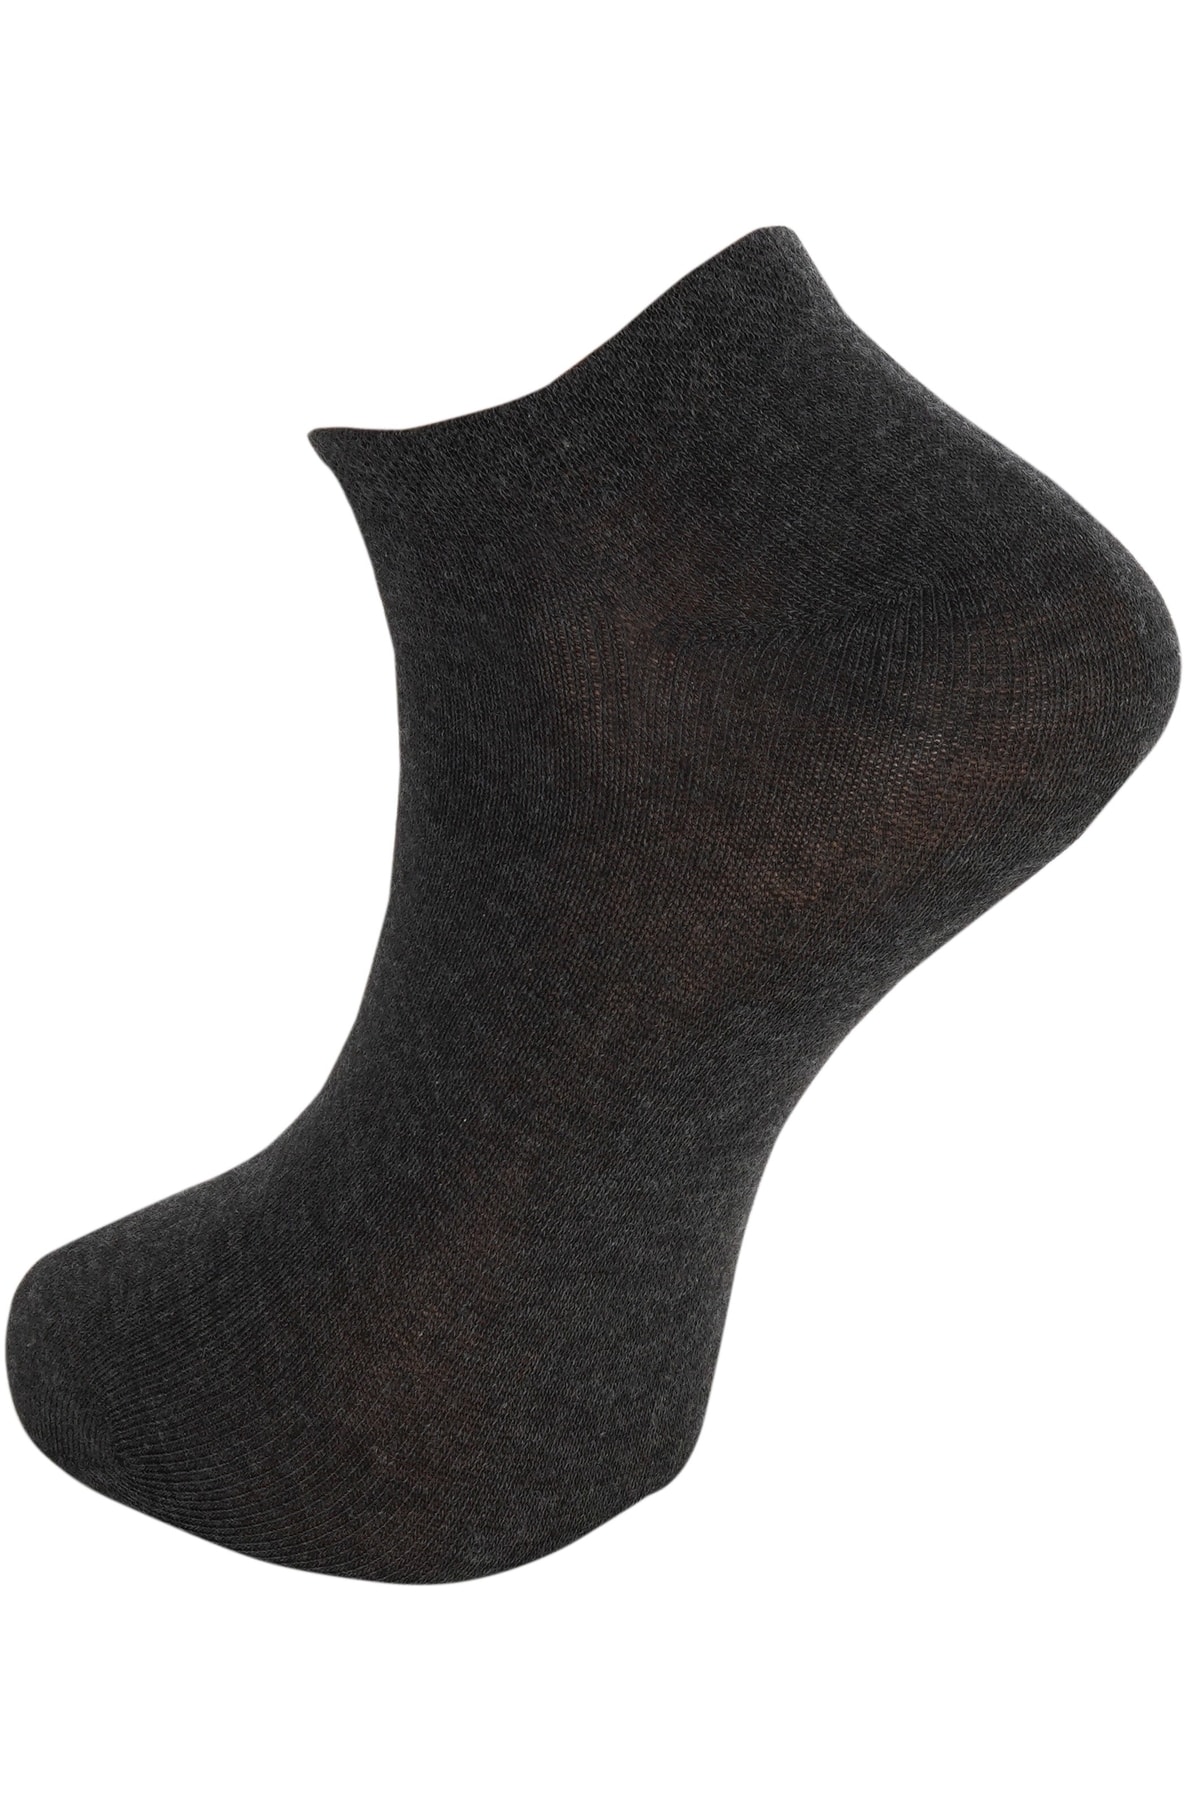 Keremden 8 Çift Unisex Dikişsiz Pamuklu 4 Mevsim Günlük Kullanıma Uygun Patik Çorap Gri Siyah Füme Lacivert IV11475